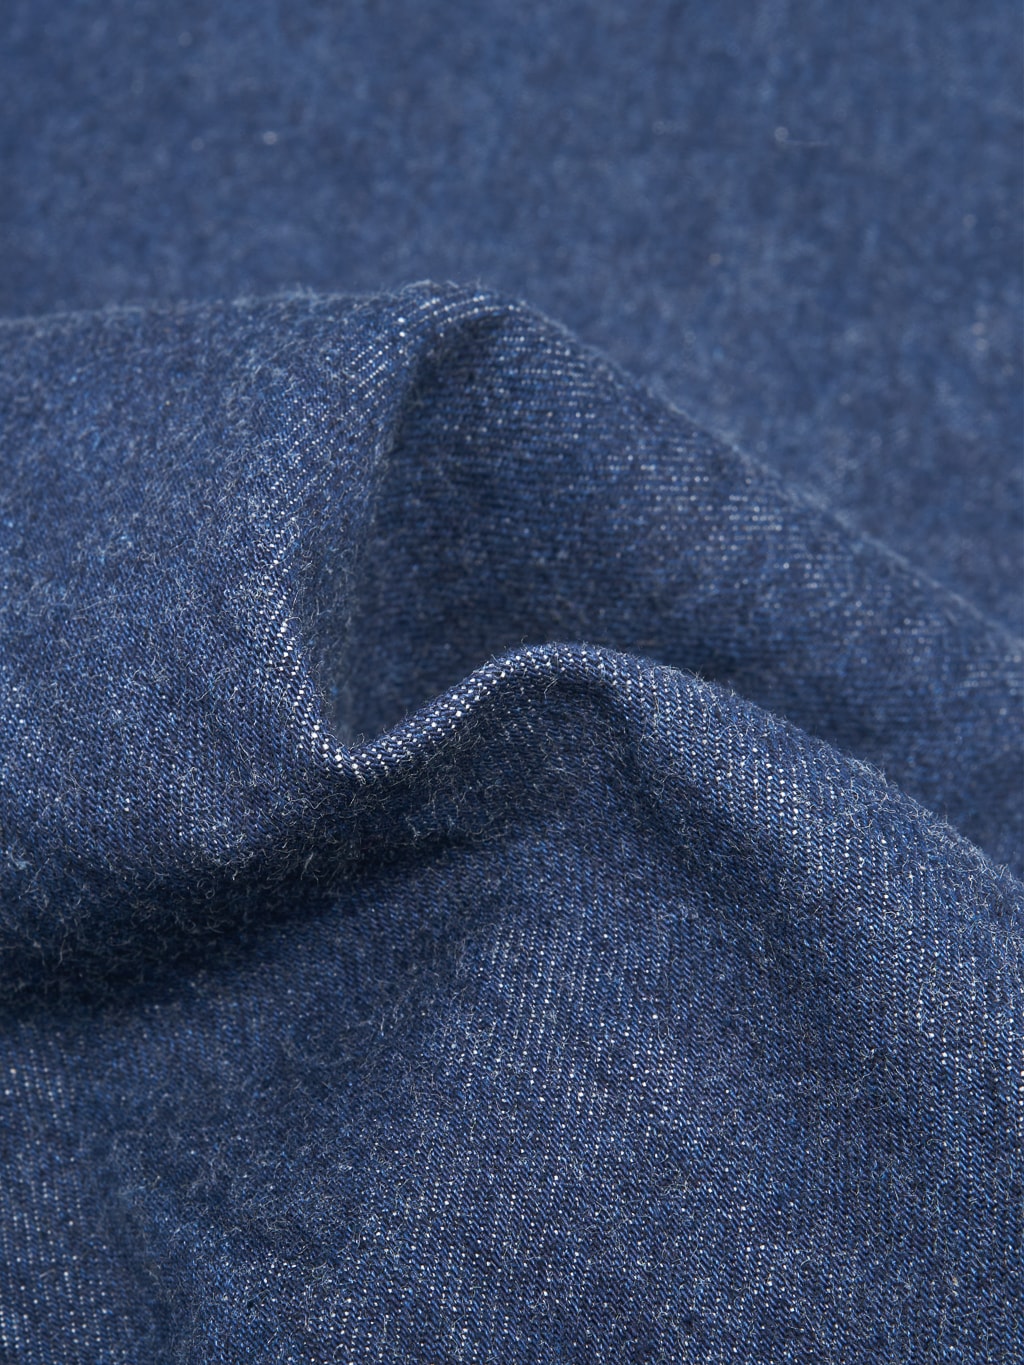 Studio D'Artisan natural indigo jeans fabric texture